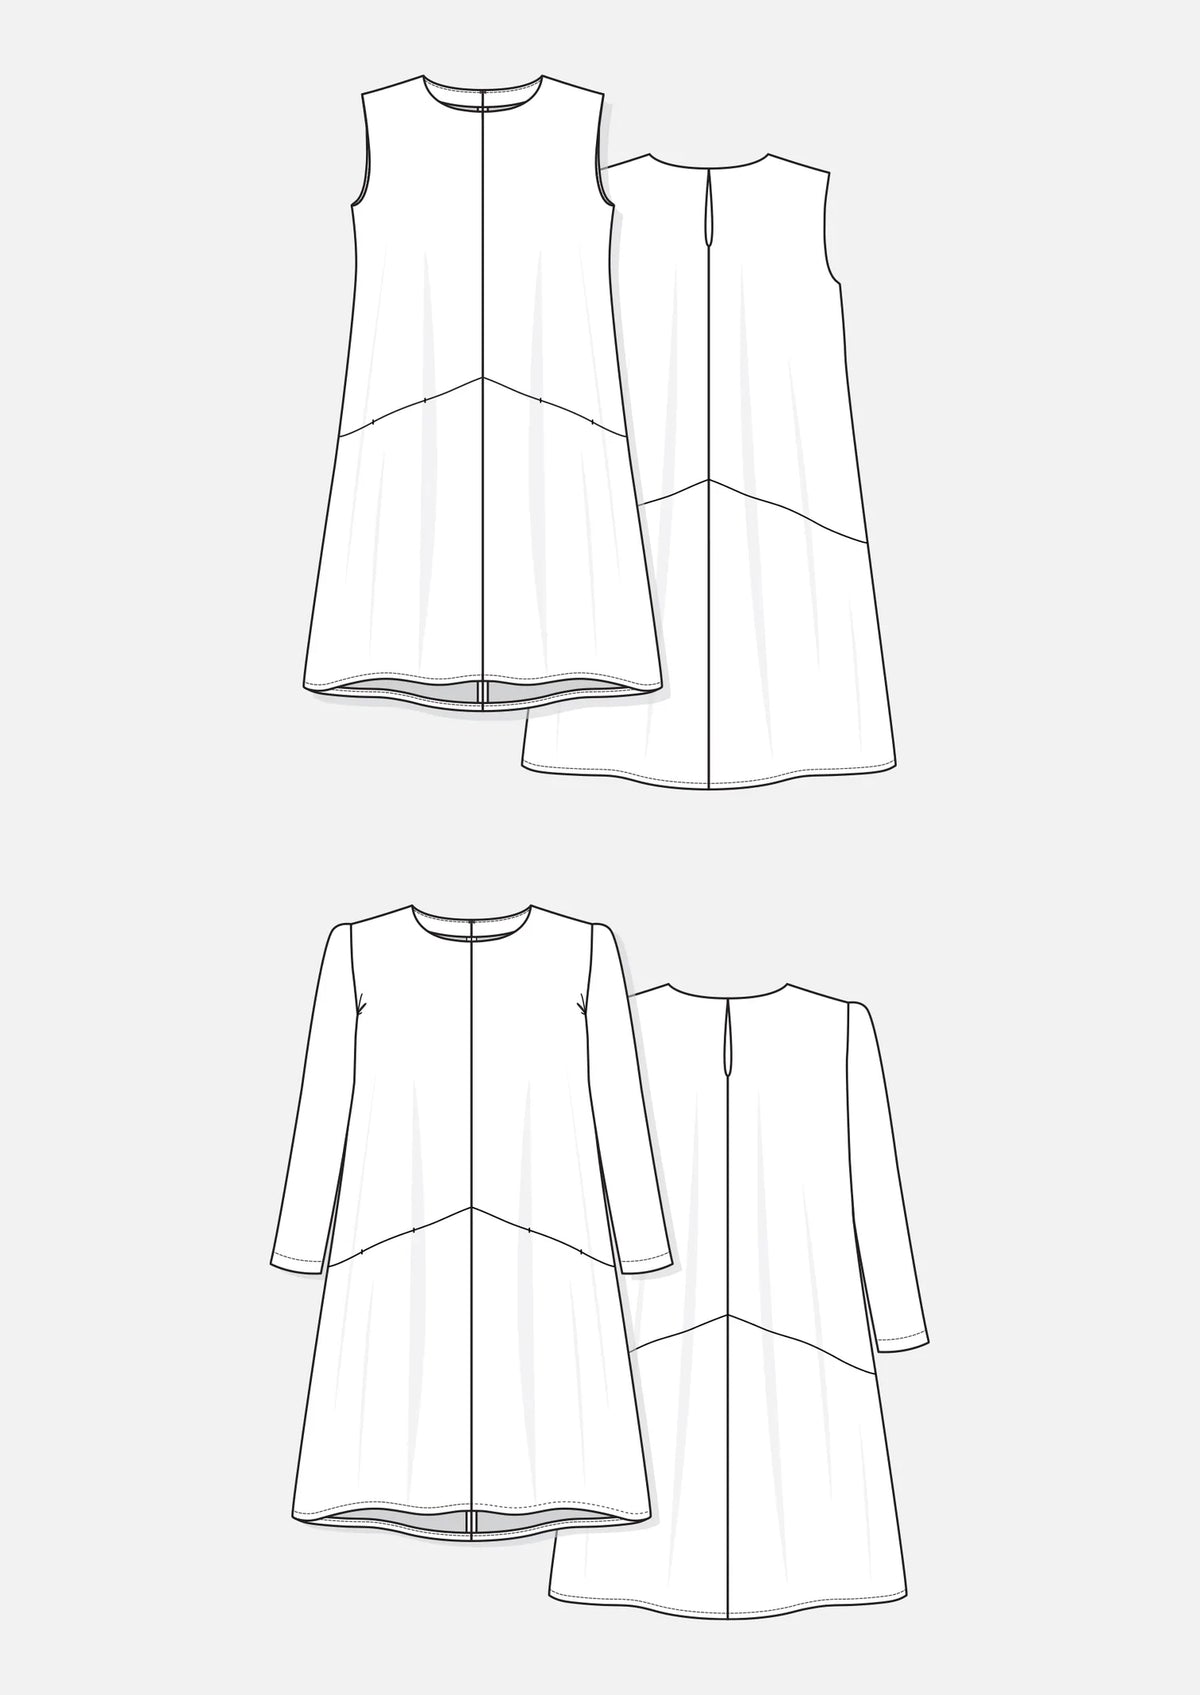 Design sketch of Farrow Dress Pattern, size 0-18